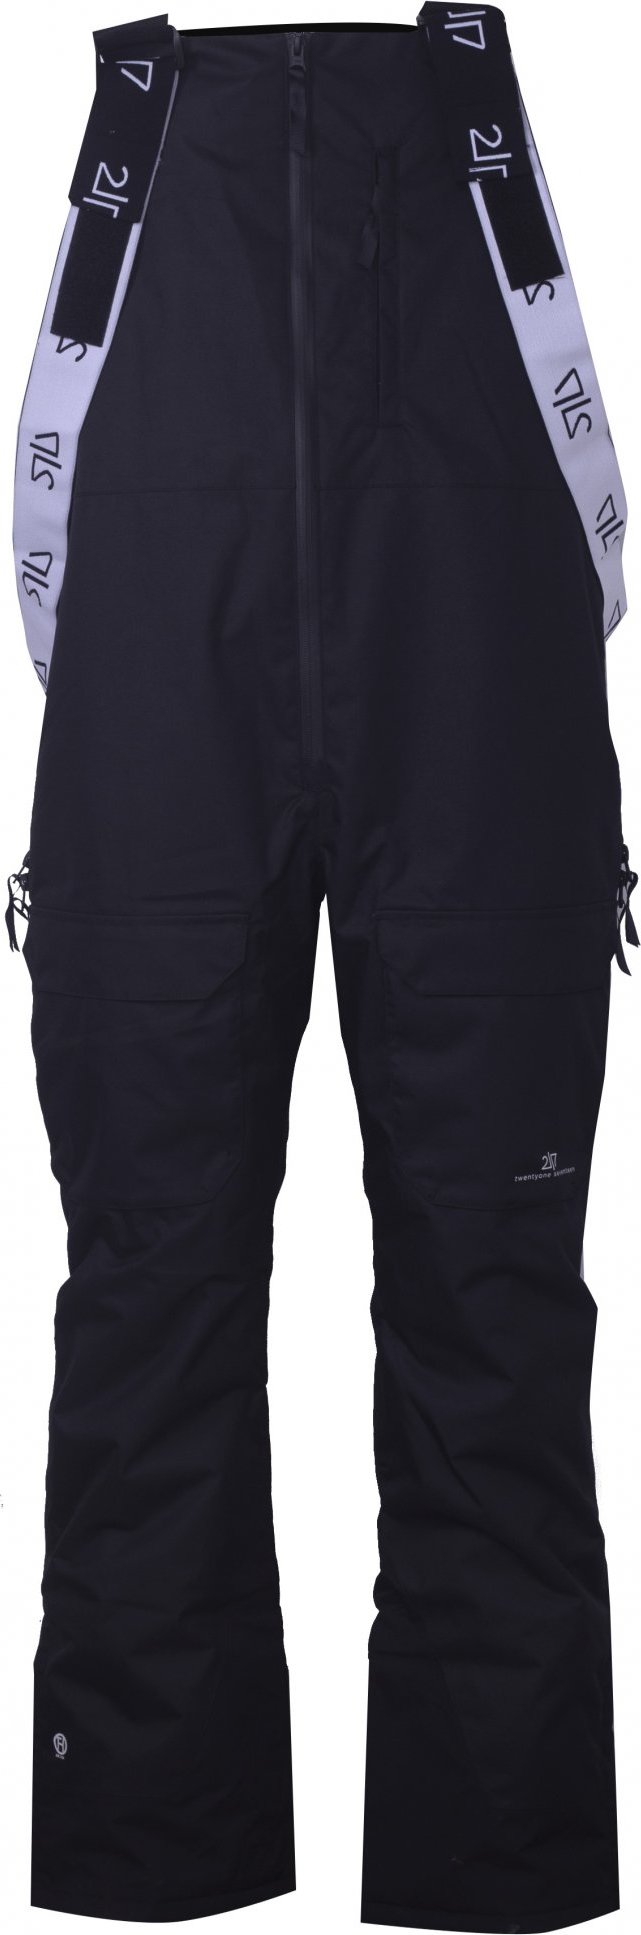 Pánské lyžařské kalhoty s náprsenkou 2117 Backa Eco černá Velikost: XL